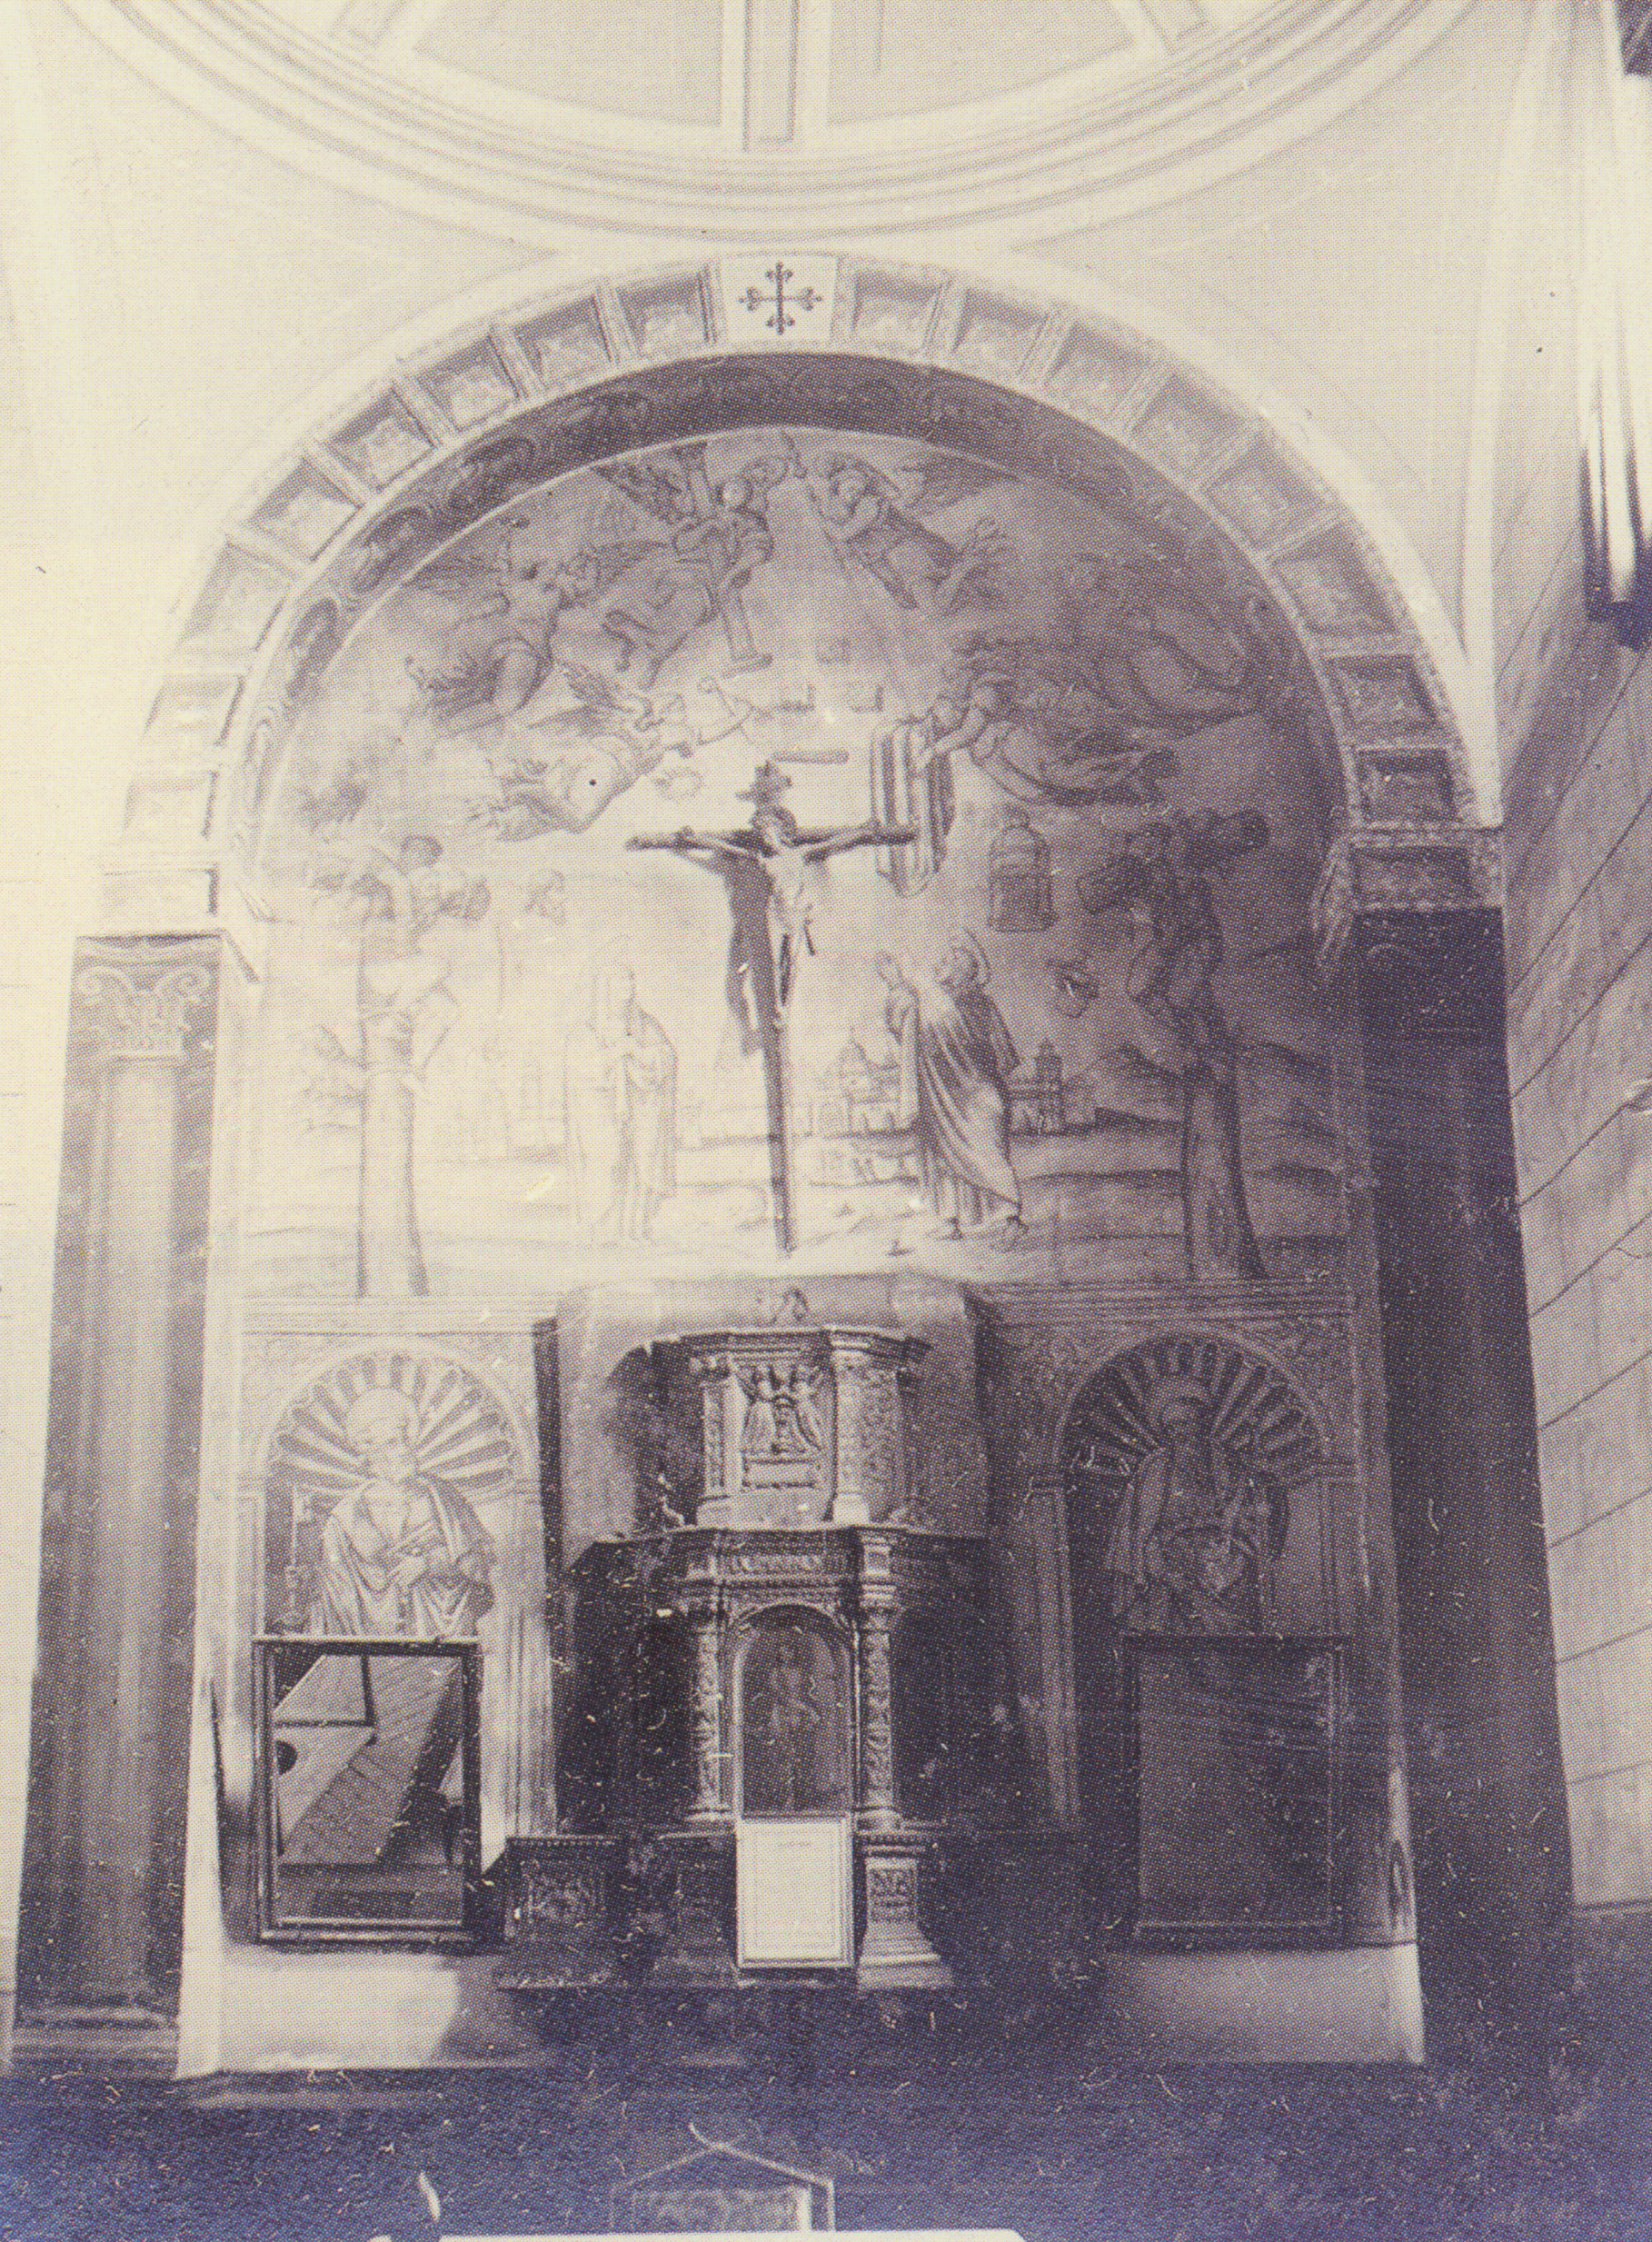 Sacrarium o Relicario antes de la guerra. Imagen incluida en Catálogo monumental artístico-histórico de la provincia de Ciudad Real de Bernardo Portuondo (1917).